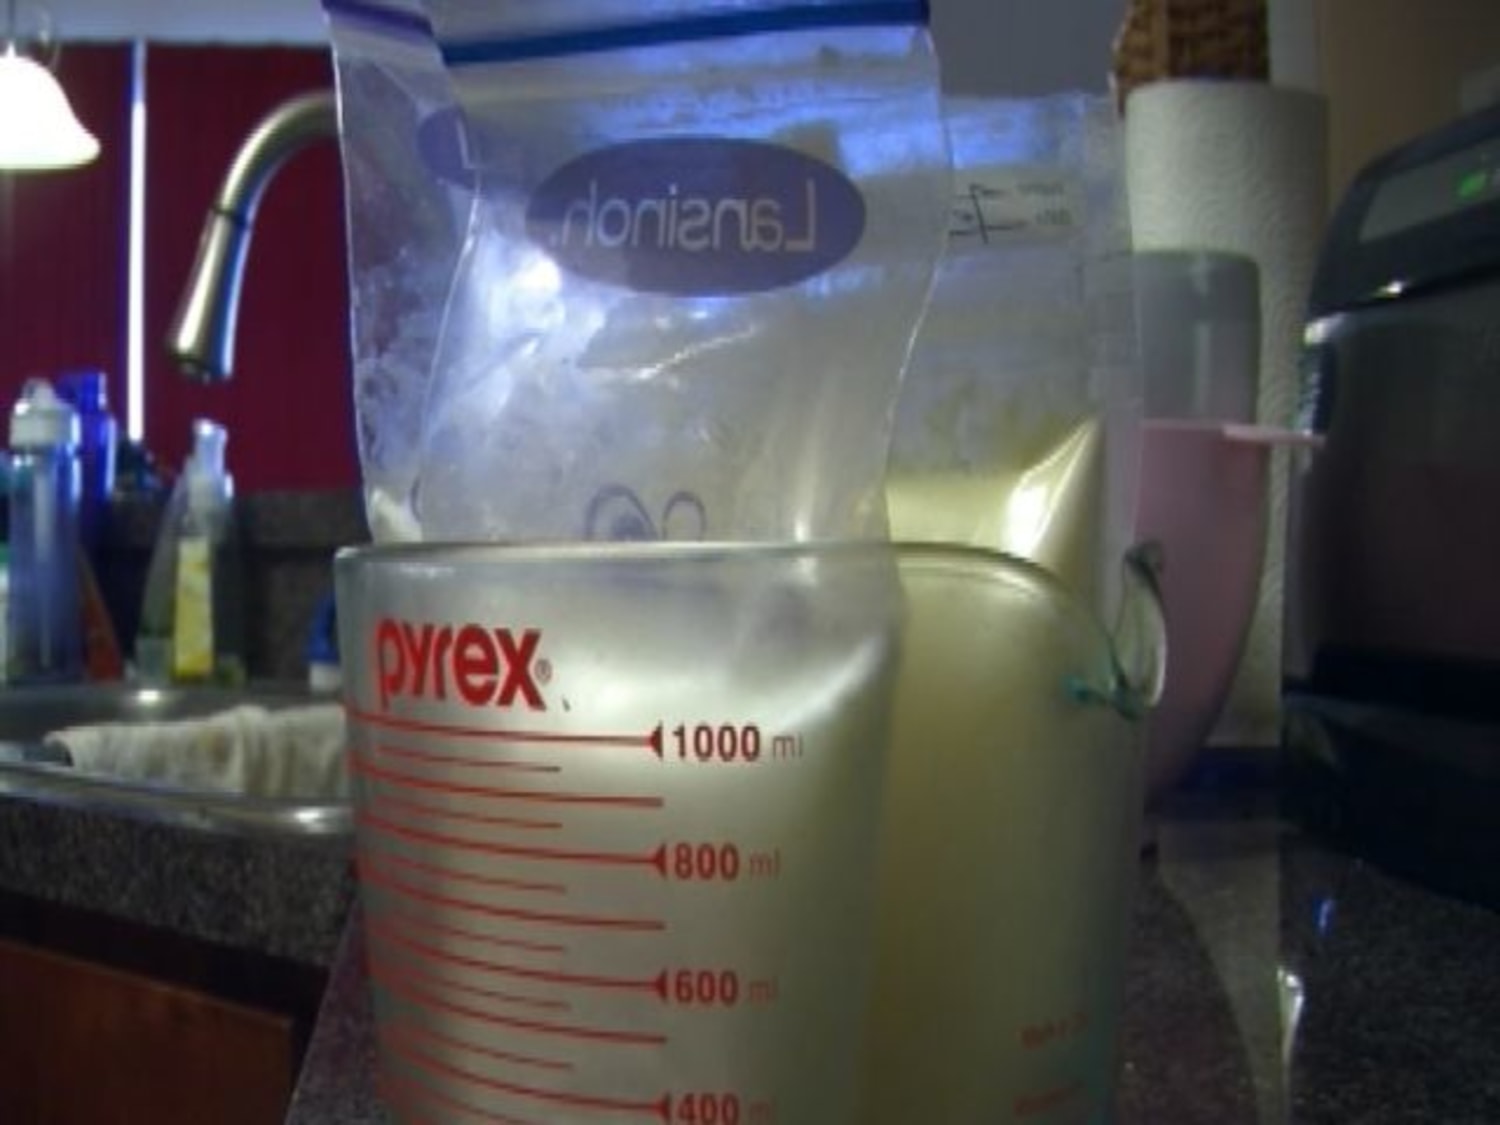 With breast milk online, it's buyer beware